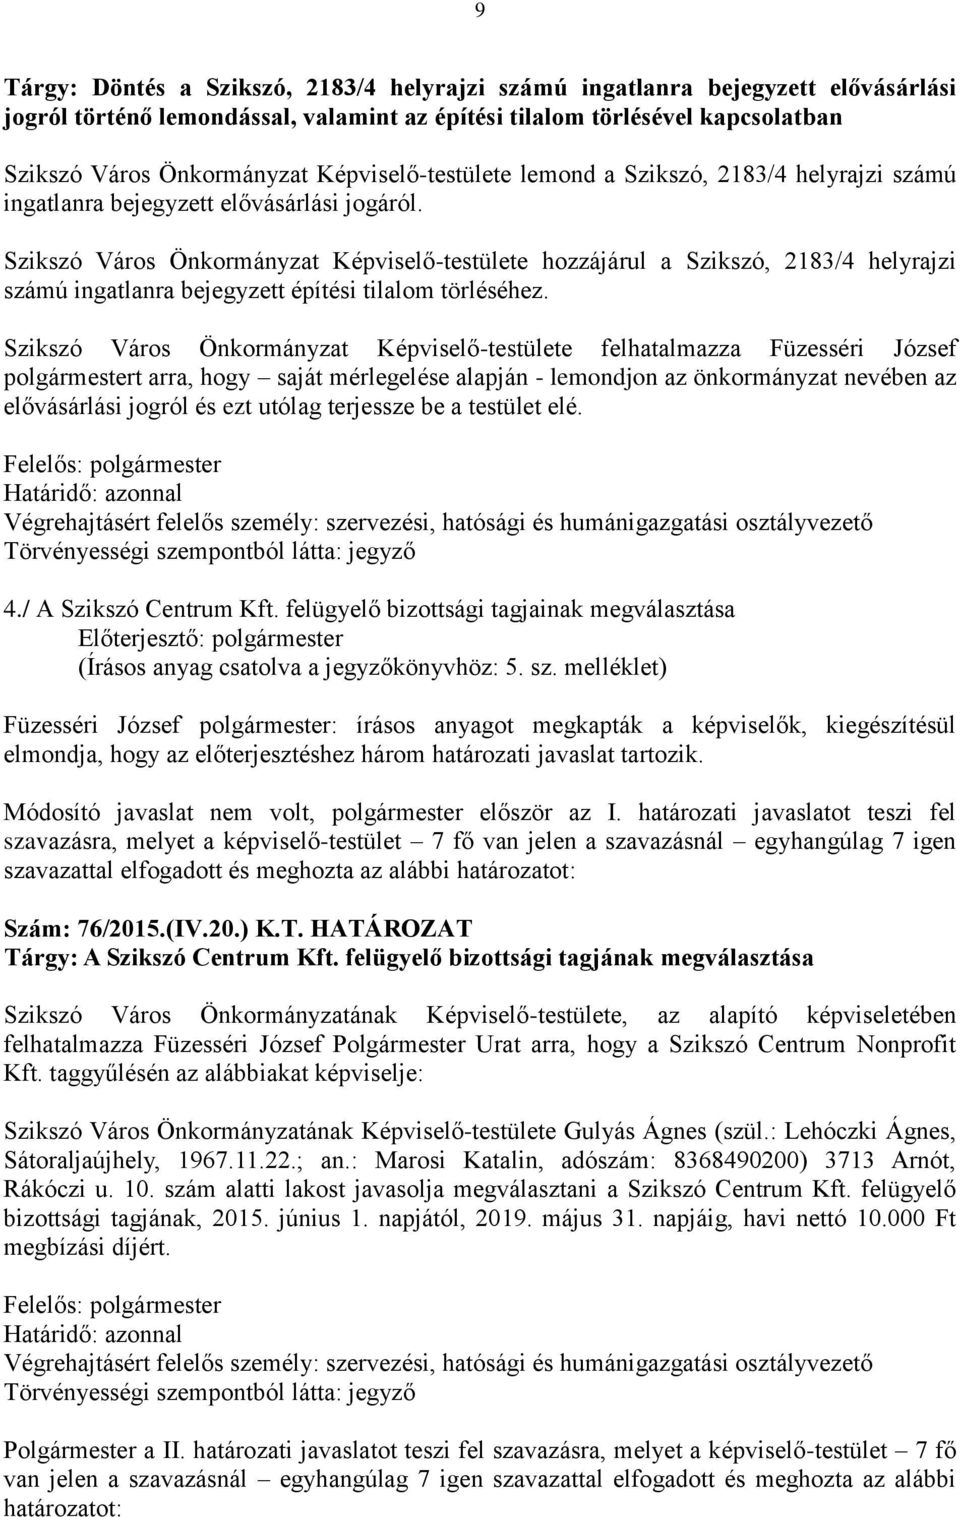 Szikszó Város Önkormányzat Képviselő-testülete hozzájárul a Szikszó, 2183/4 helyrajzi számú ingatlanra bejegyzett építési tilalom törléséhez.